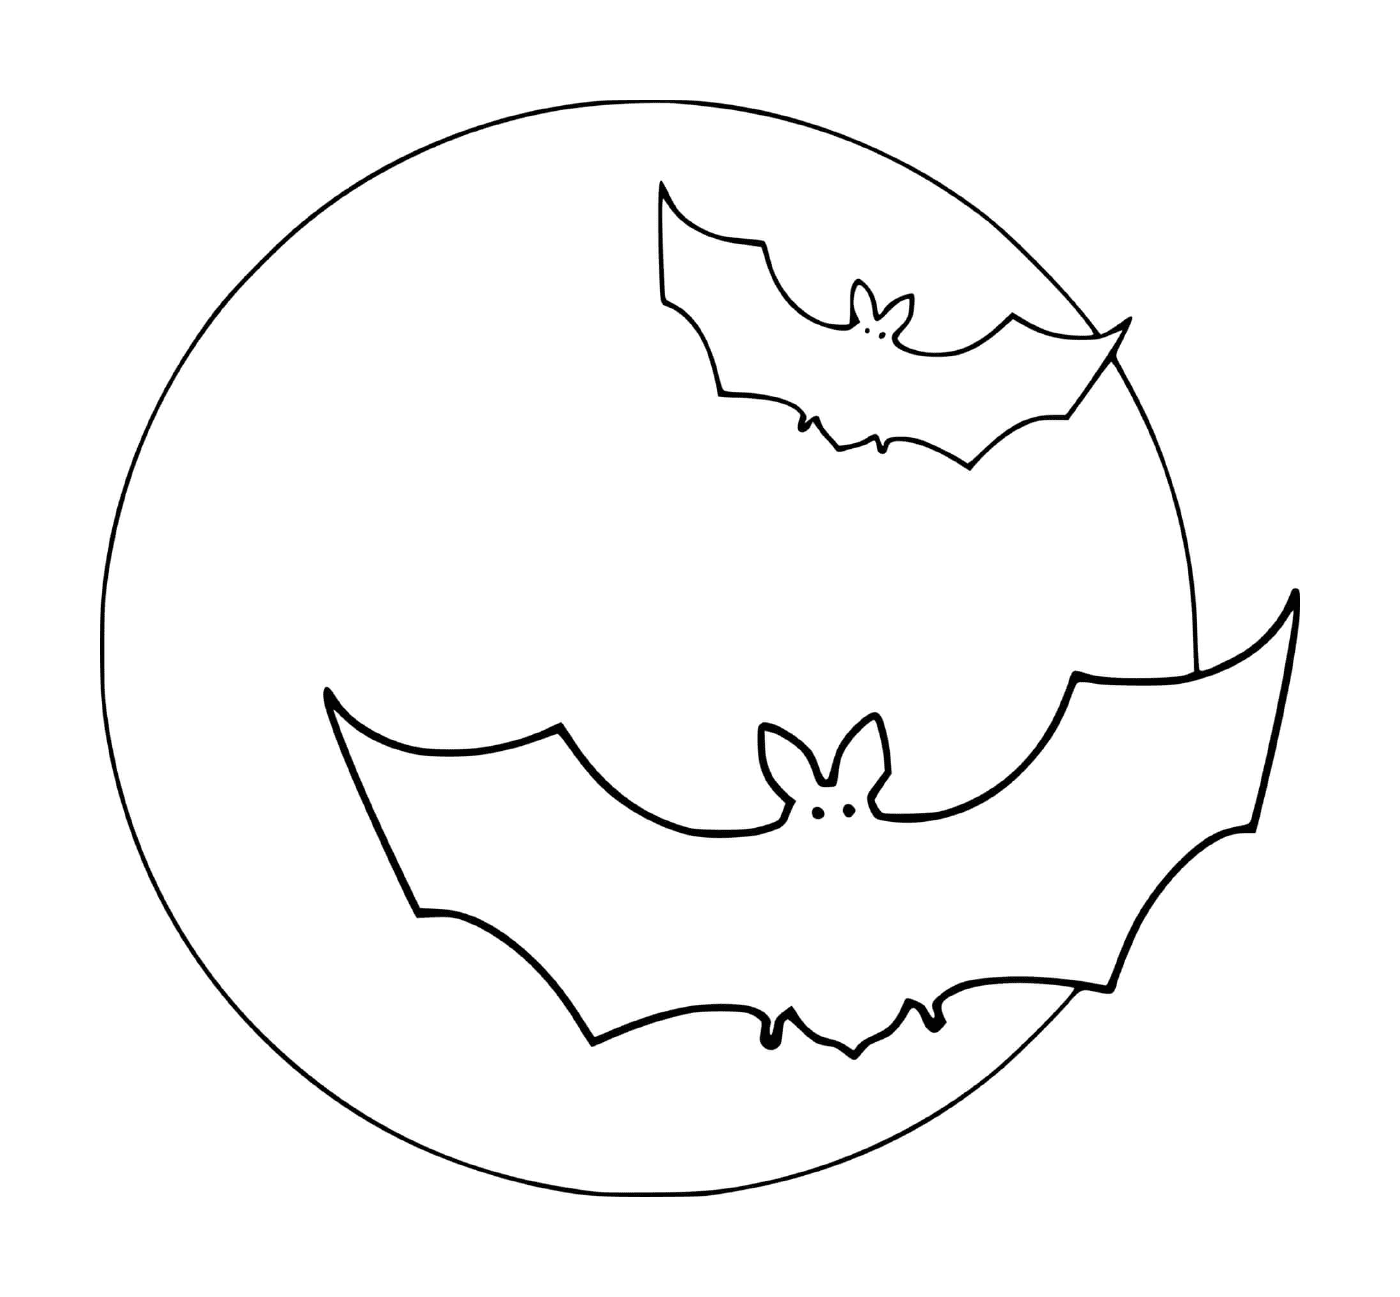  dois morcegos voando na frente de uma lua cheia em 31 de outubro 